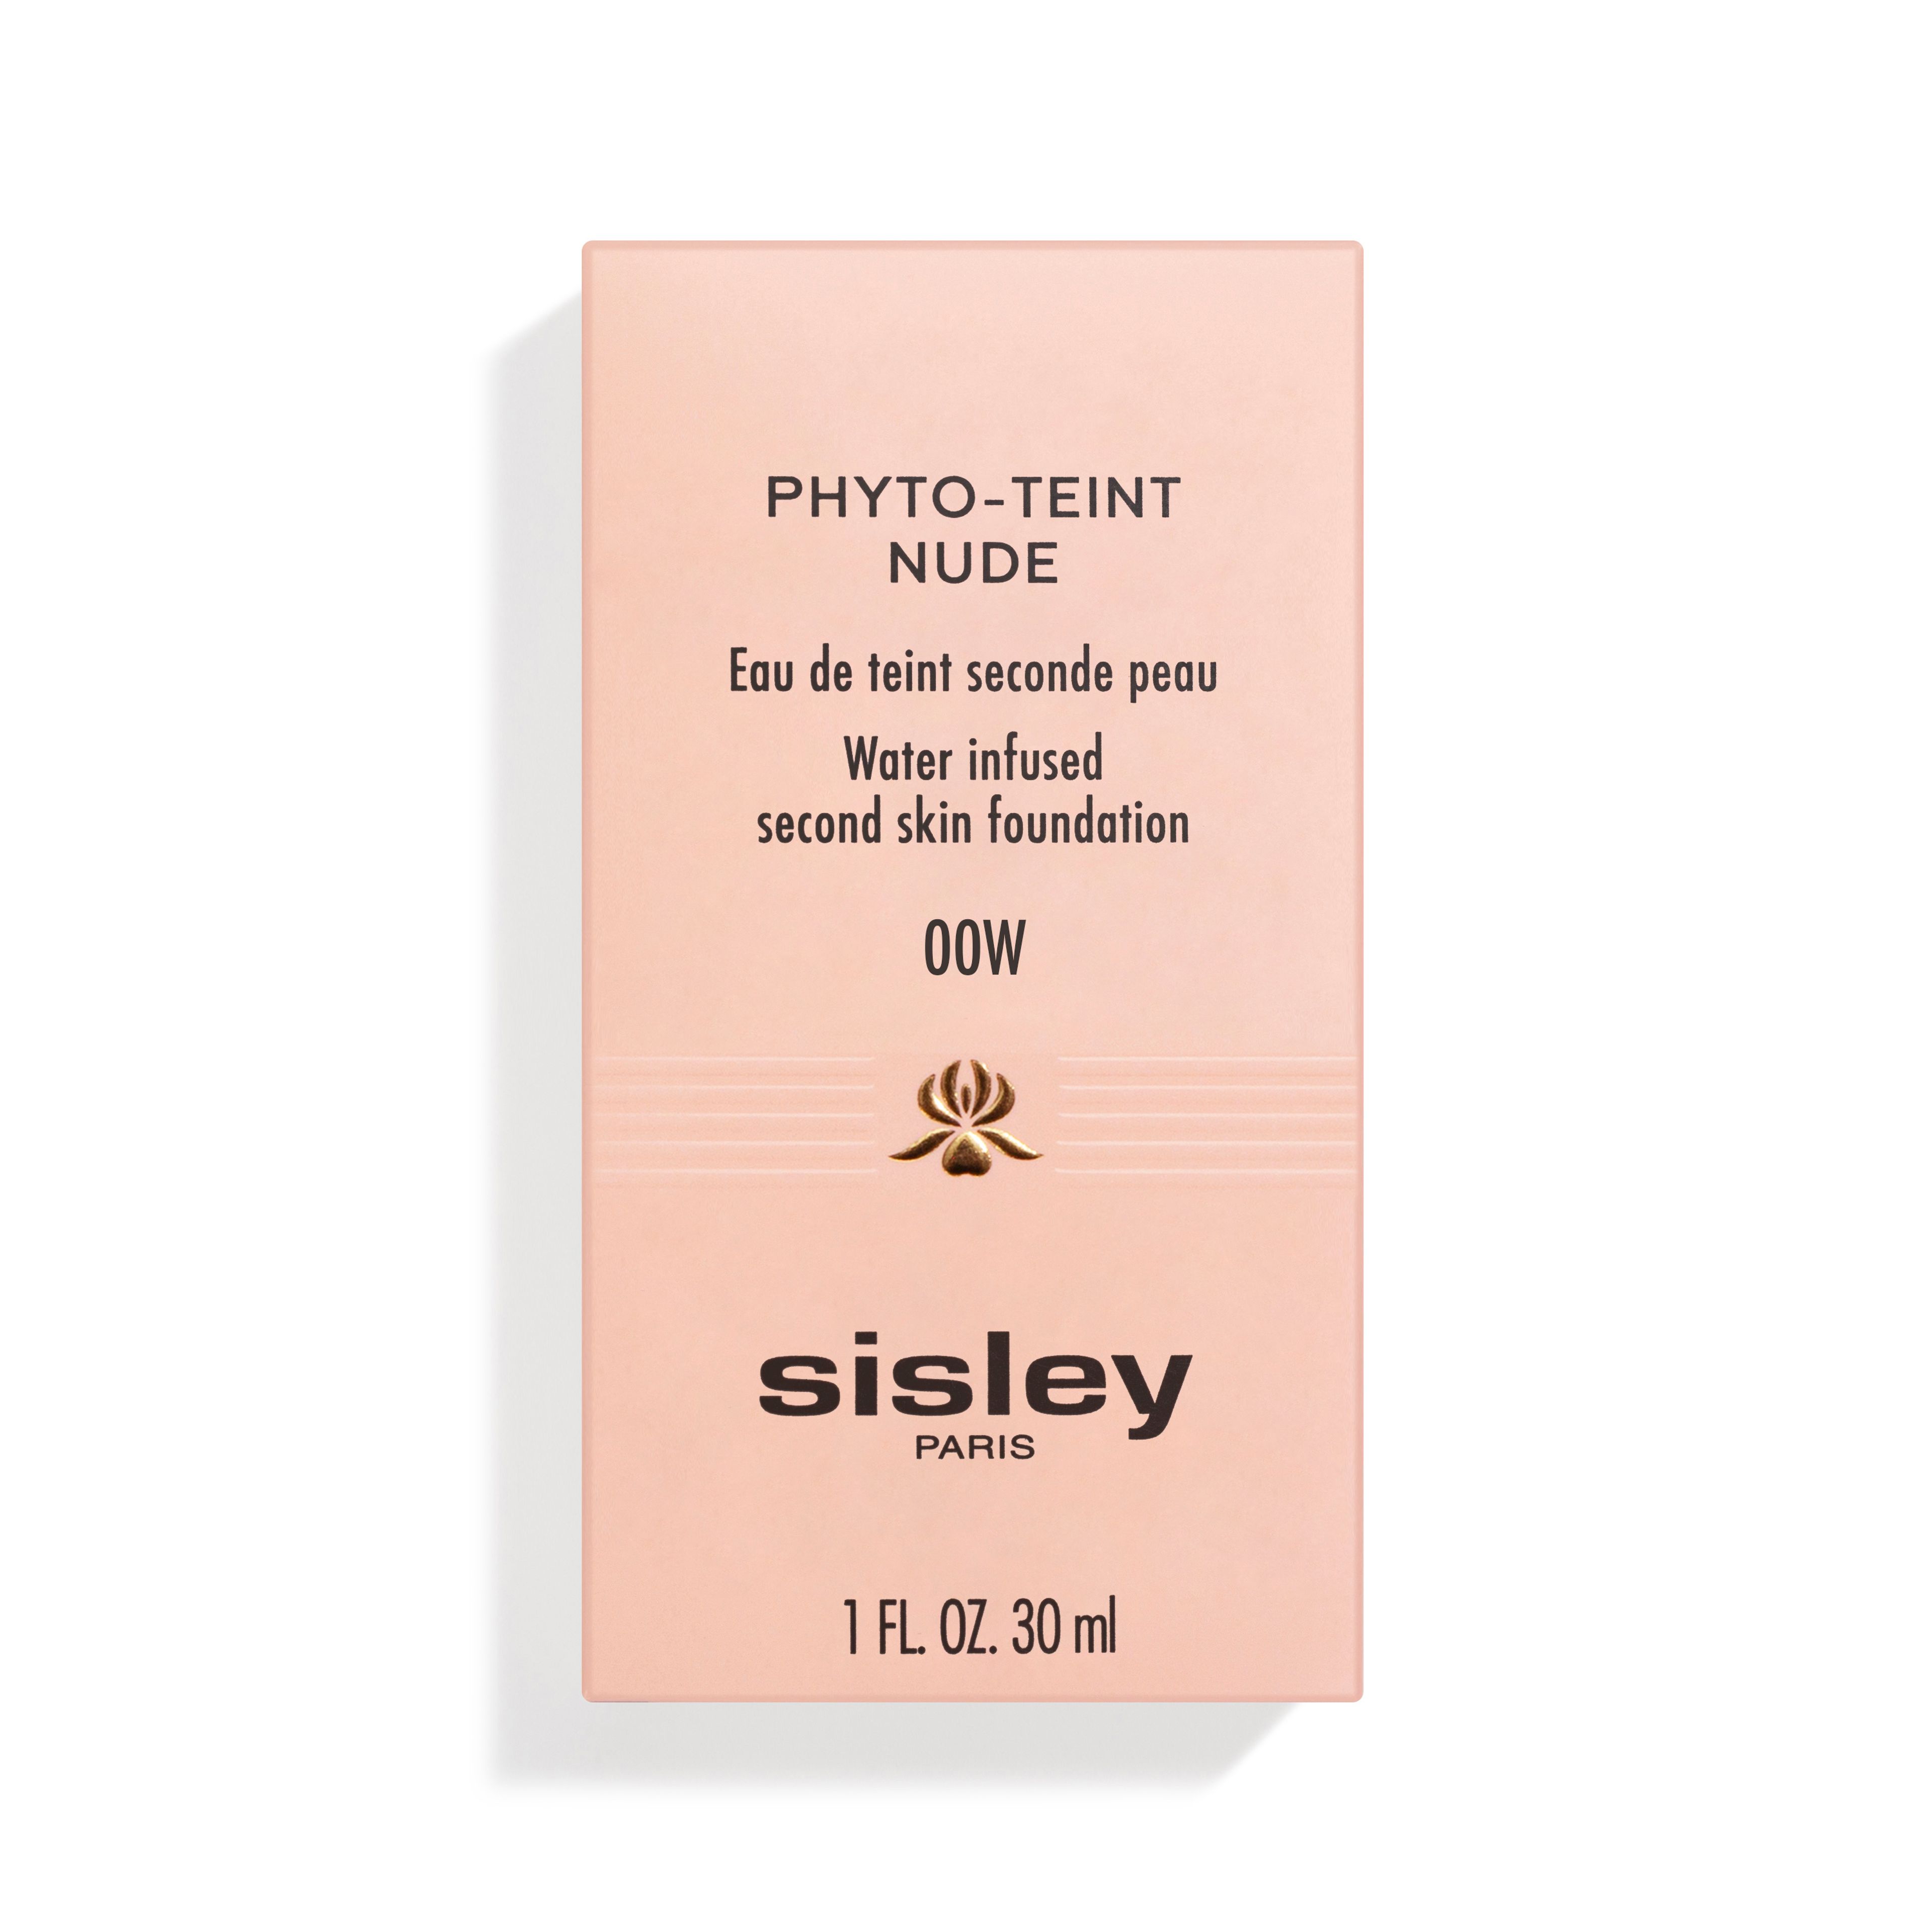 SISLEY Phyto-teint Nude 3